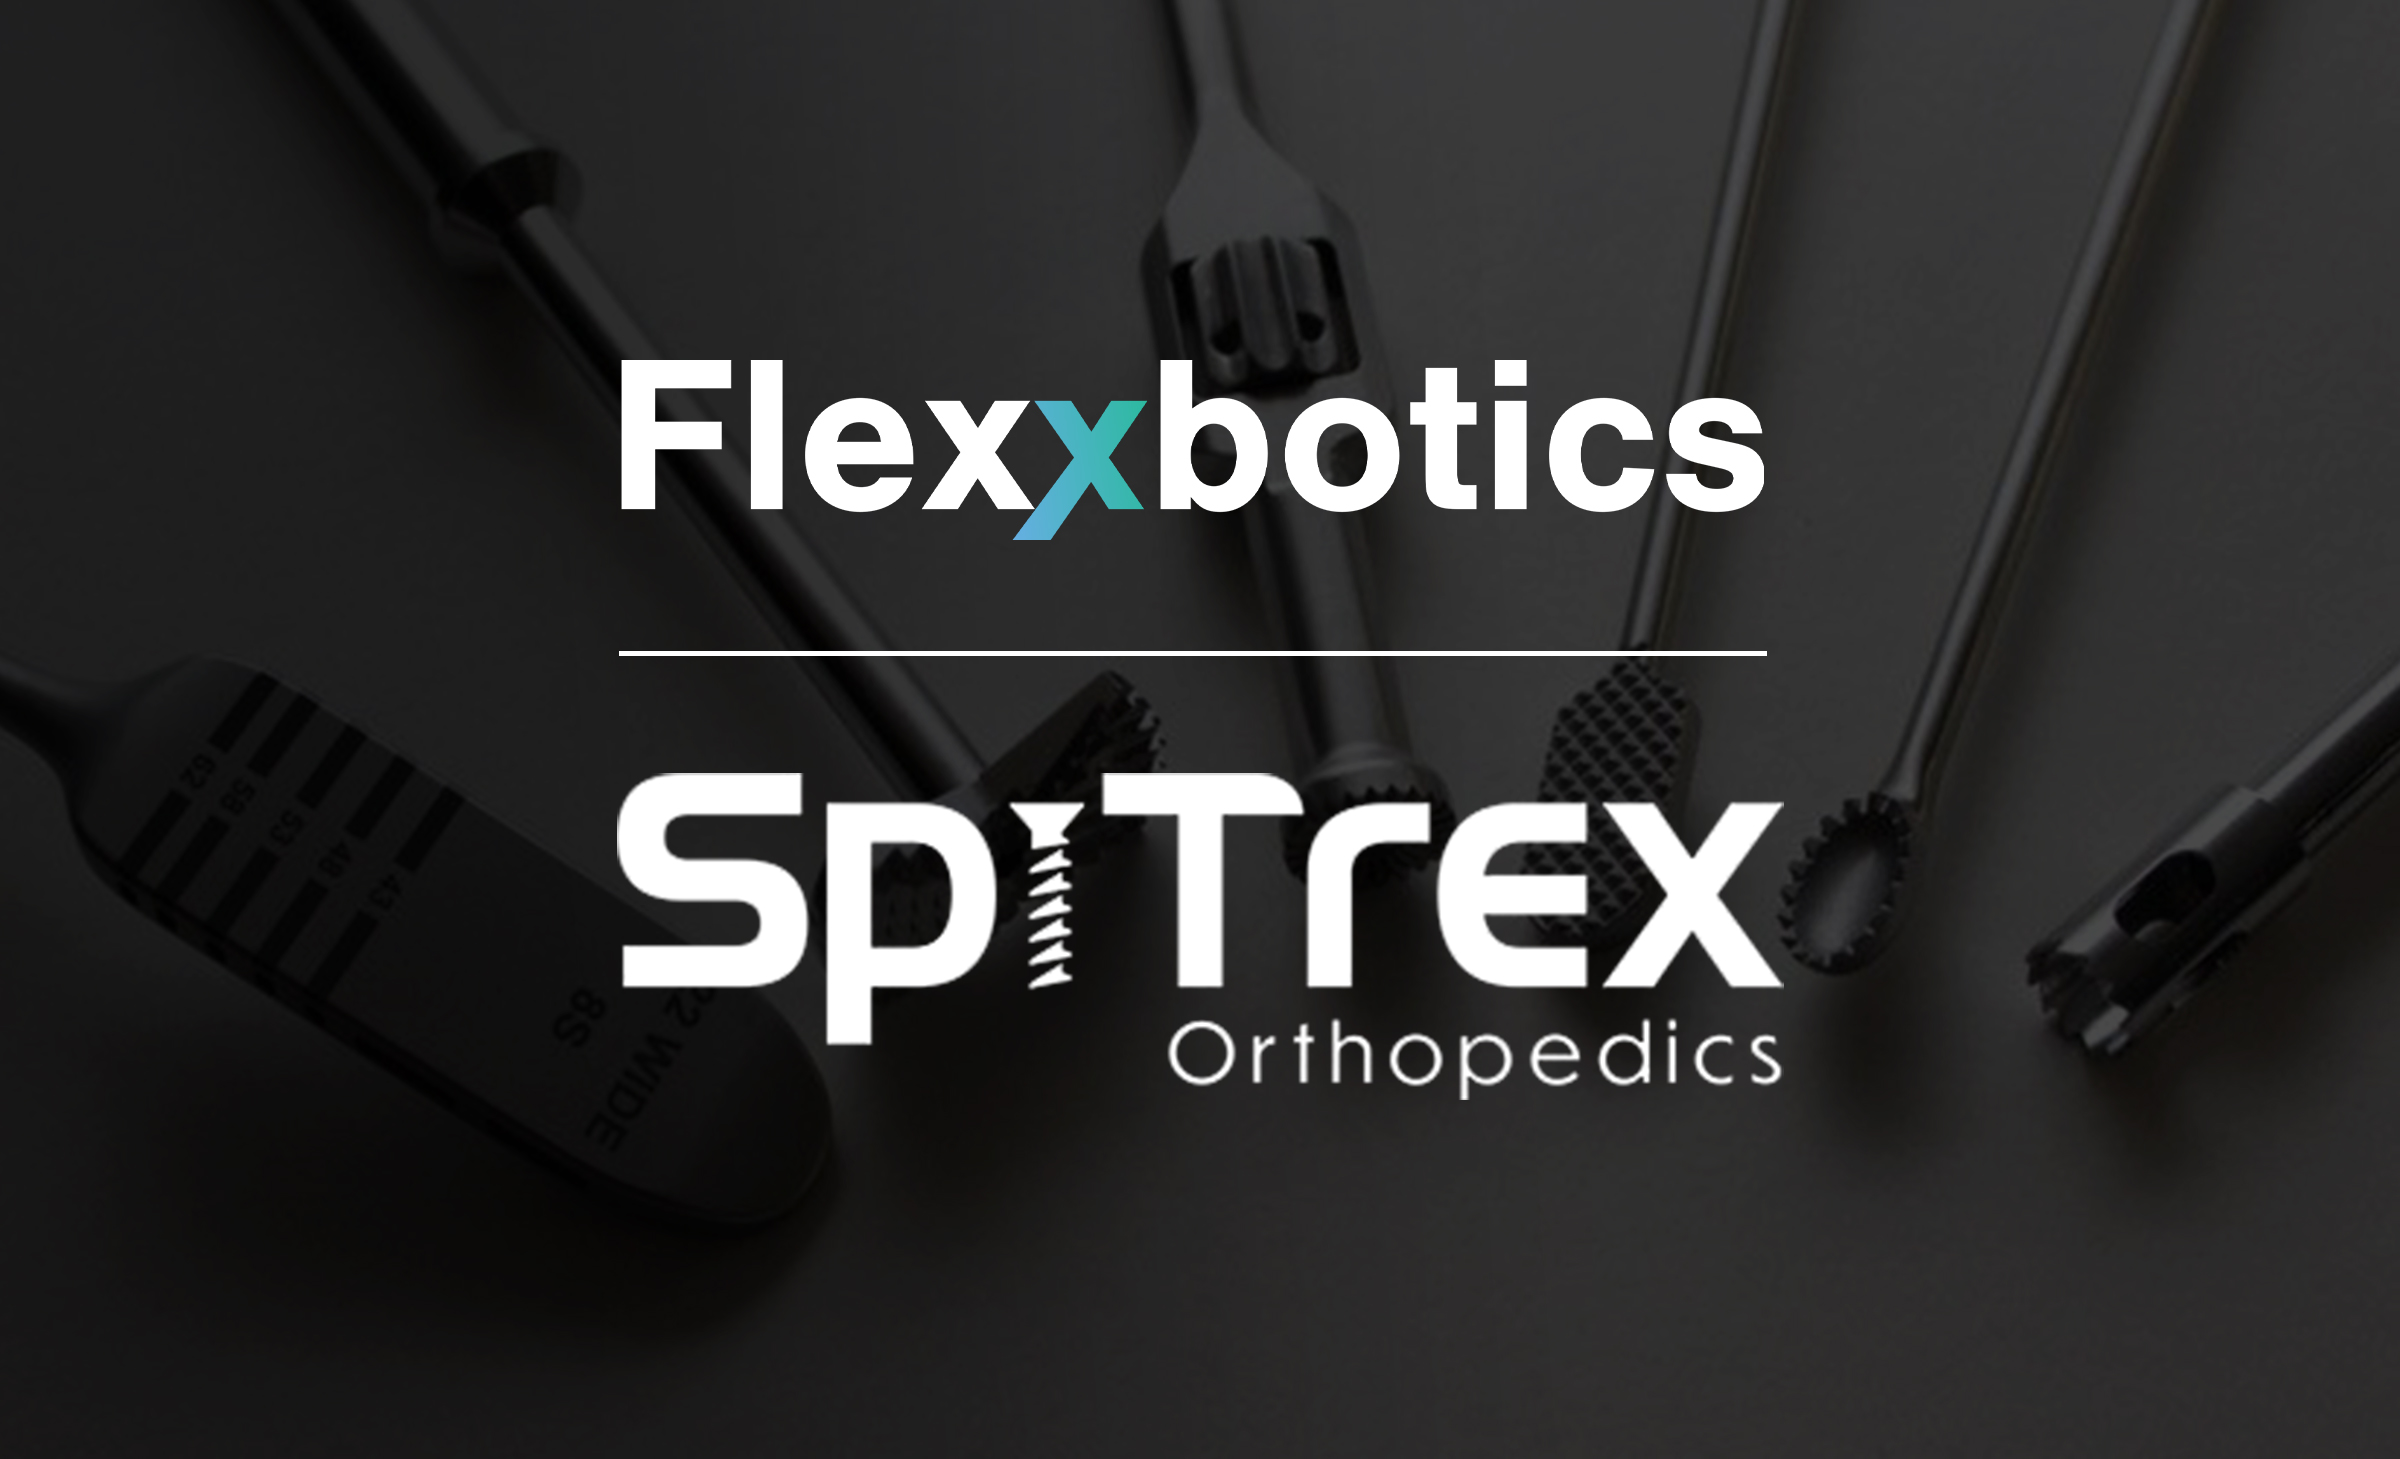 SpiTrex Orthopedics Selects Flexxbotics